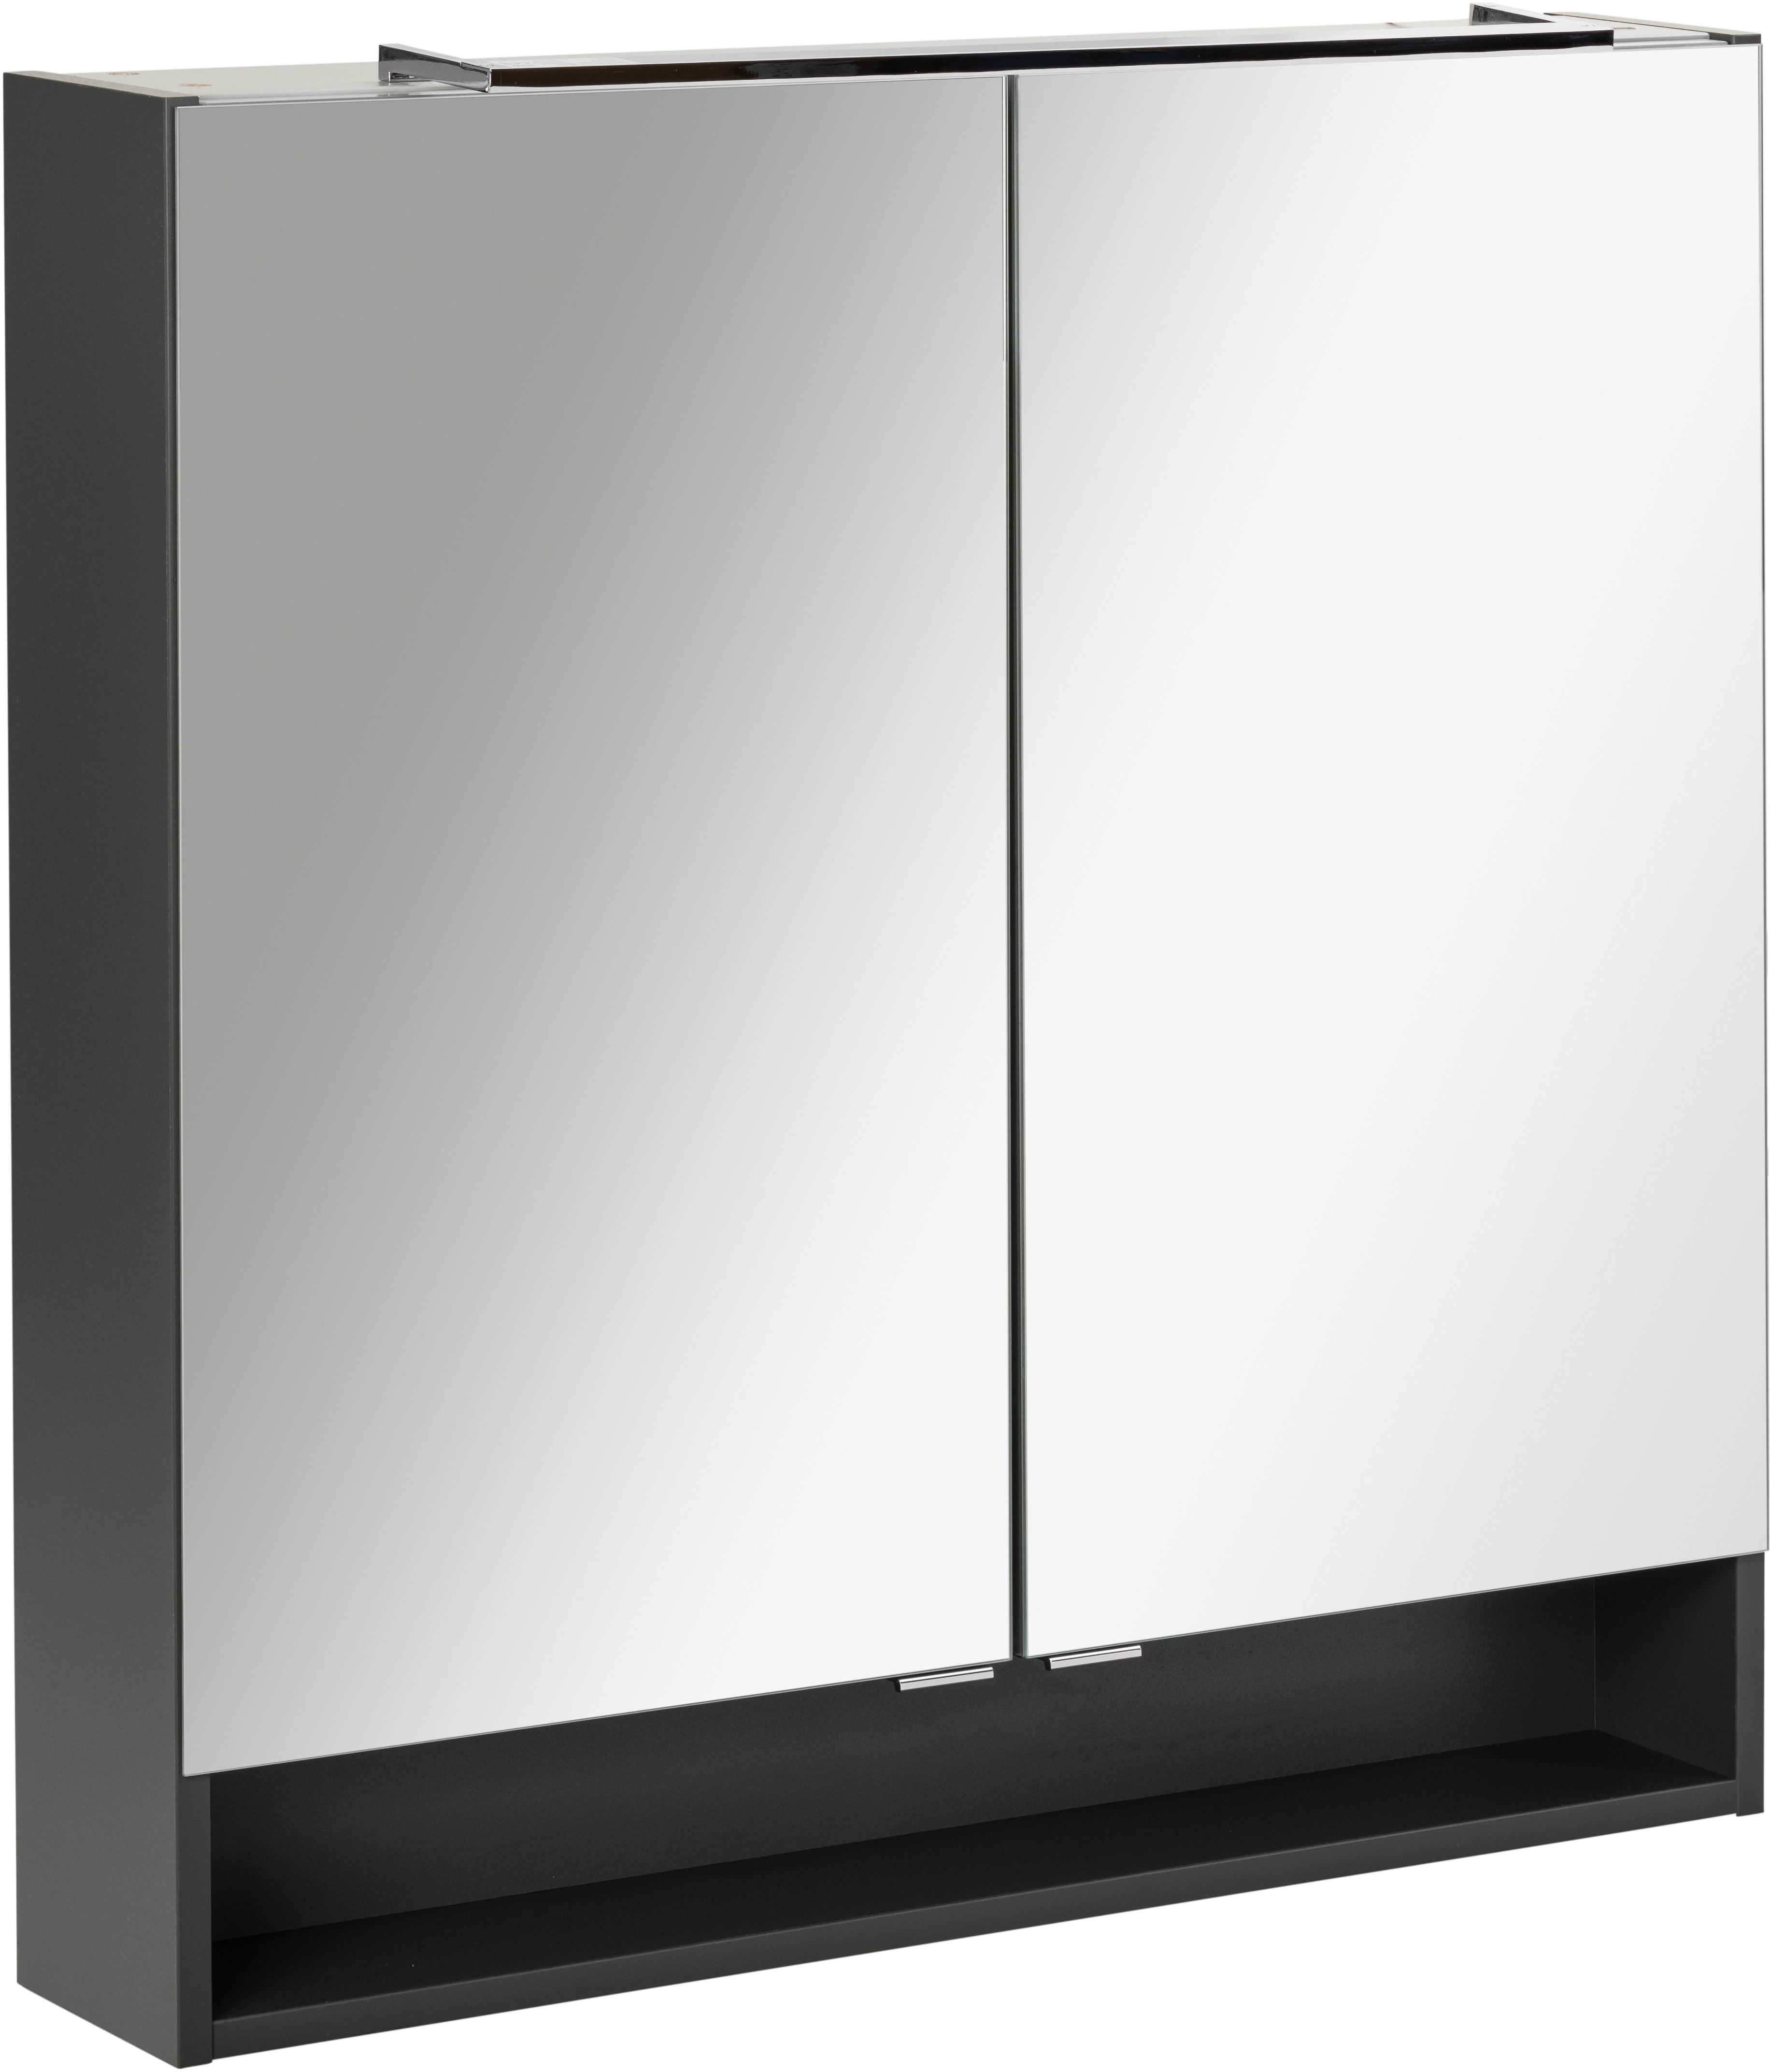 Fackelmann Spiegelschrank Luna Anthrazit 80 cm mit Softclose Türen kaufen  bei OBI